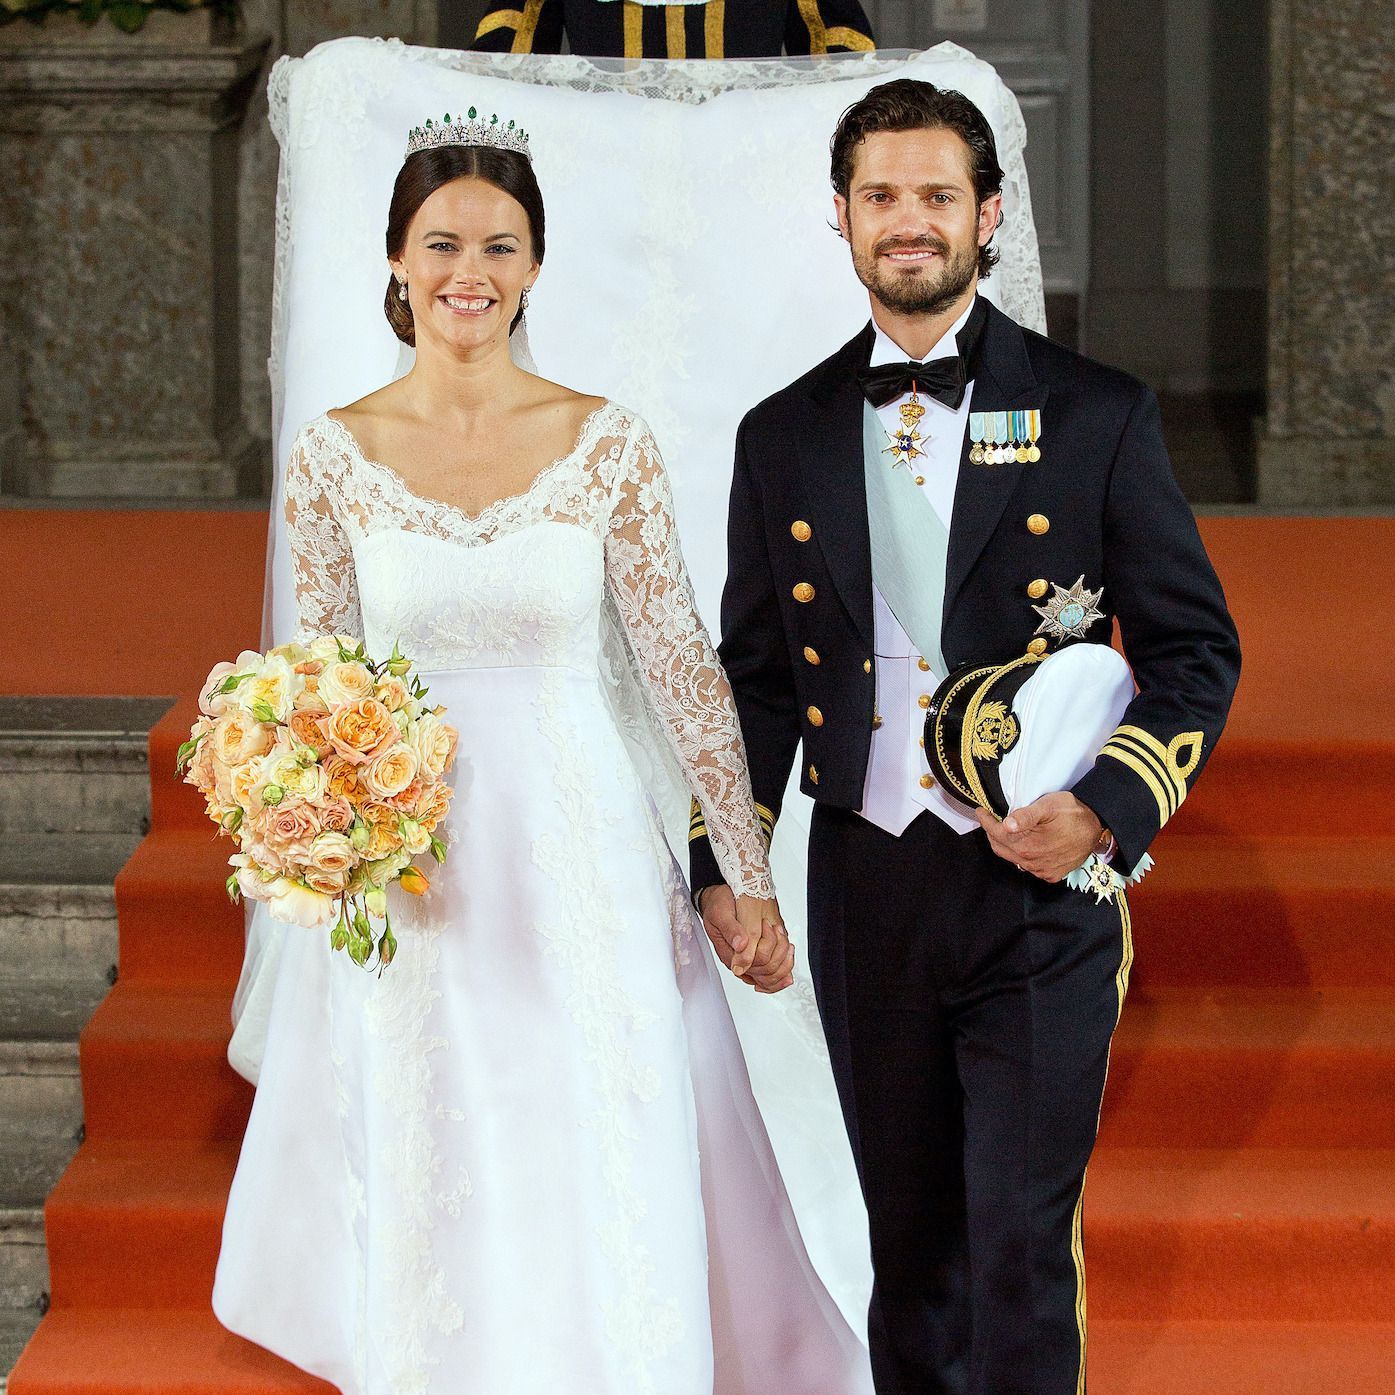 Mariage royal Carl Philip de Suede et Sofia Hellqvist le prince et la star de tele realite